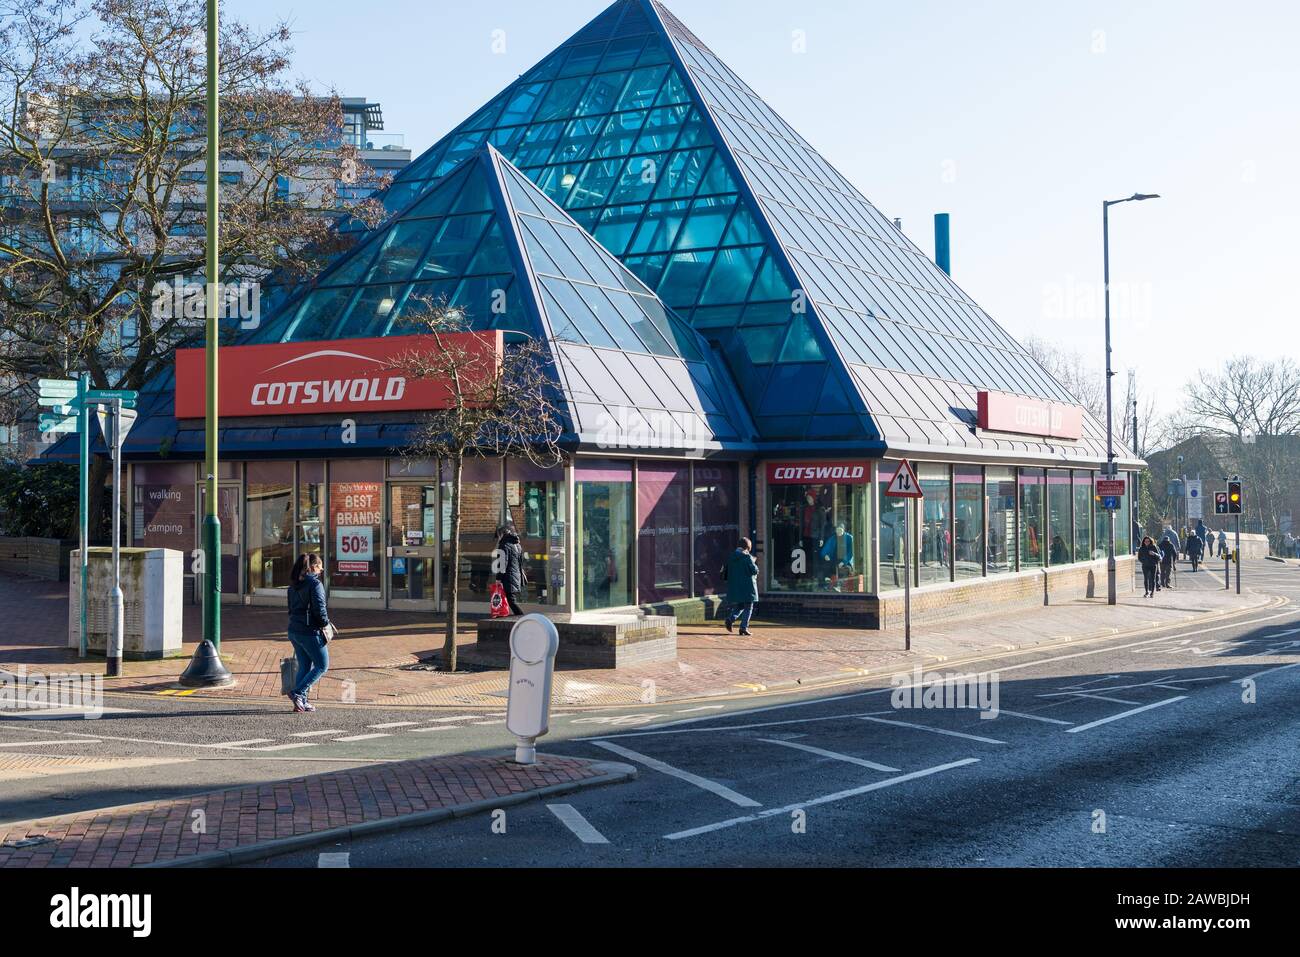 La pyramide en verre bleu, qui abrite la boutique de vêtements et d'équipements de camping Cotswold, High Street, Watford, Hertfordshire, Angleterre, Royaume-Uni Banque D'Images